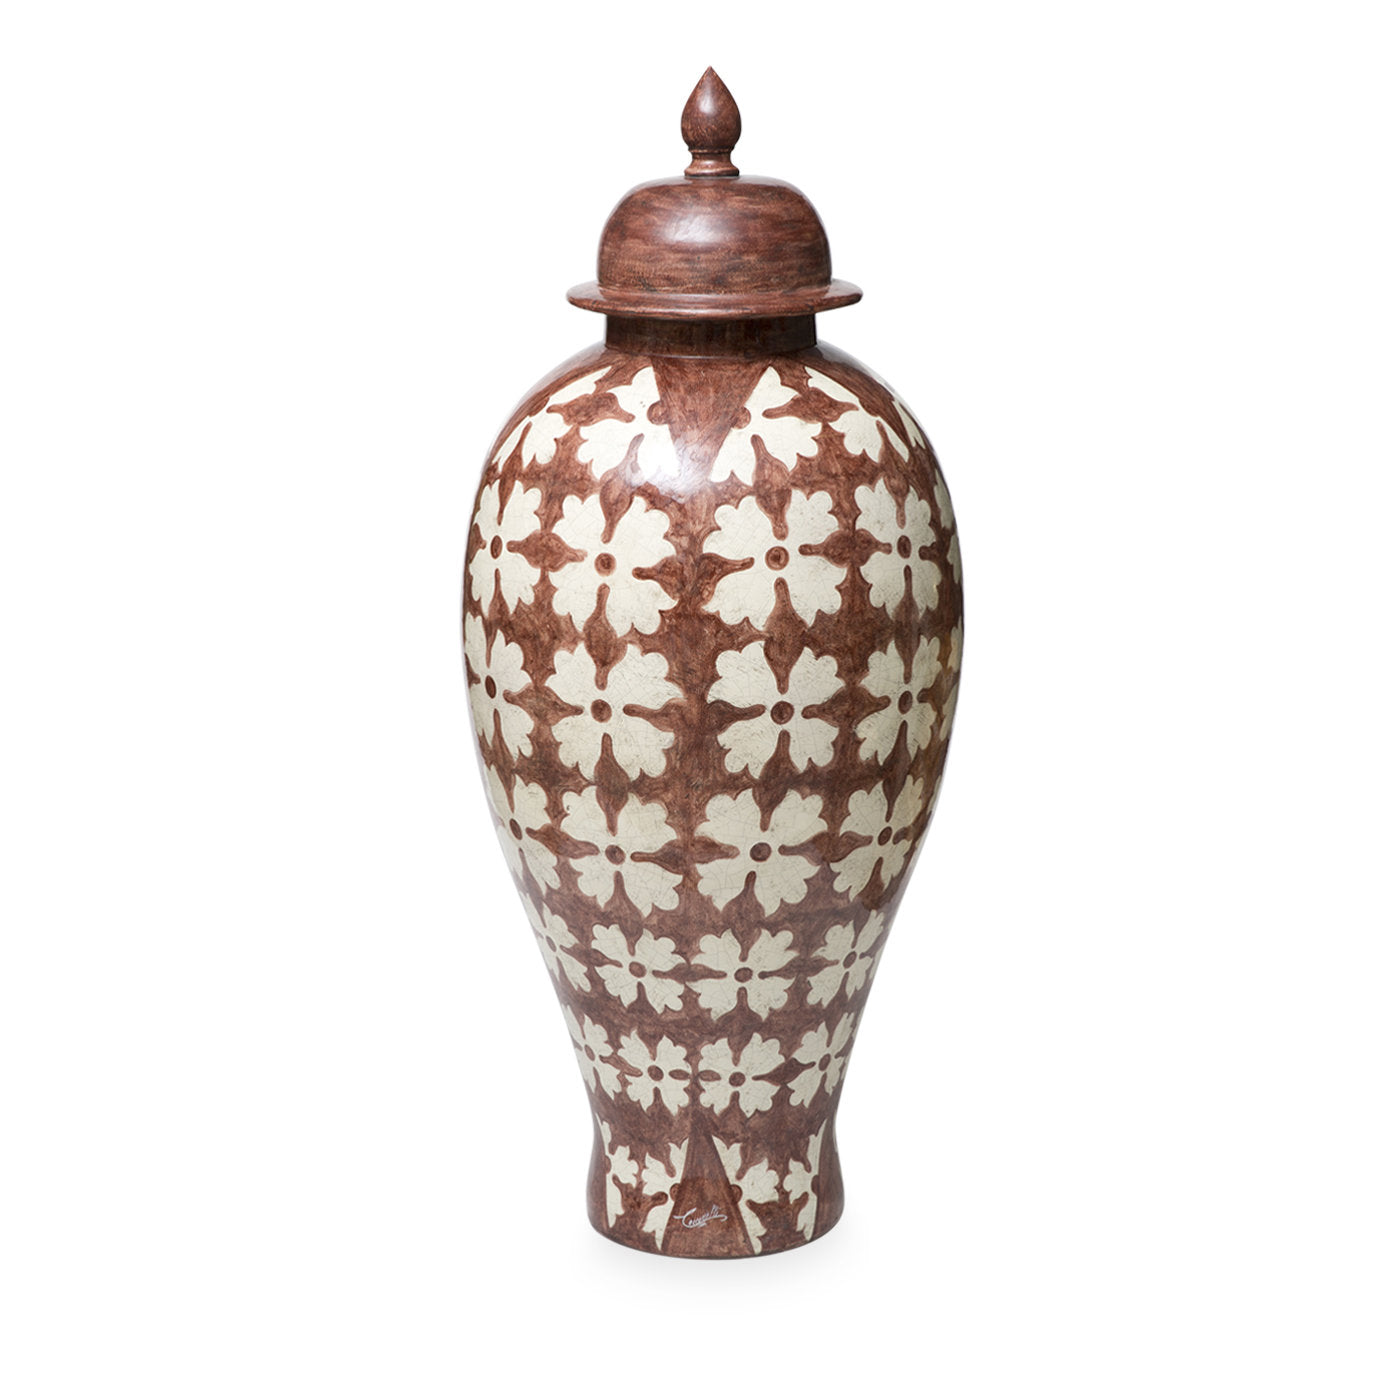 Orientale Ceramic Vase - Main view